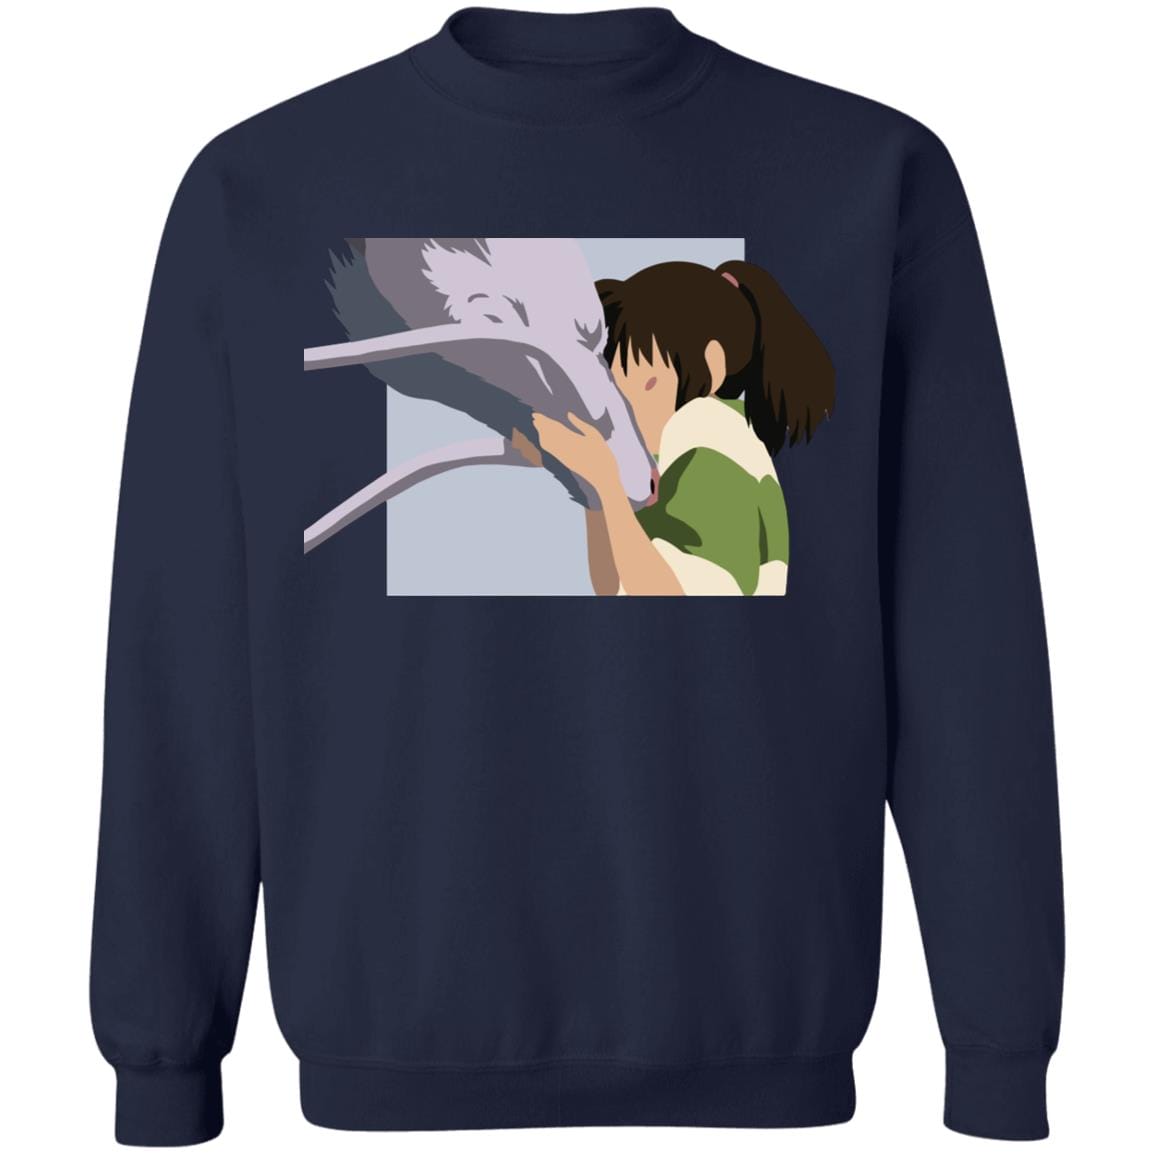 Spirited Away Haku and Chihiro Graphic Sweatshirt